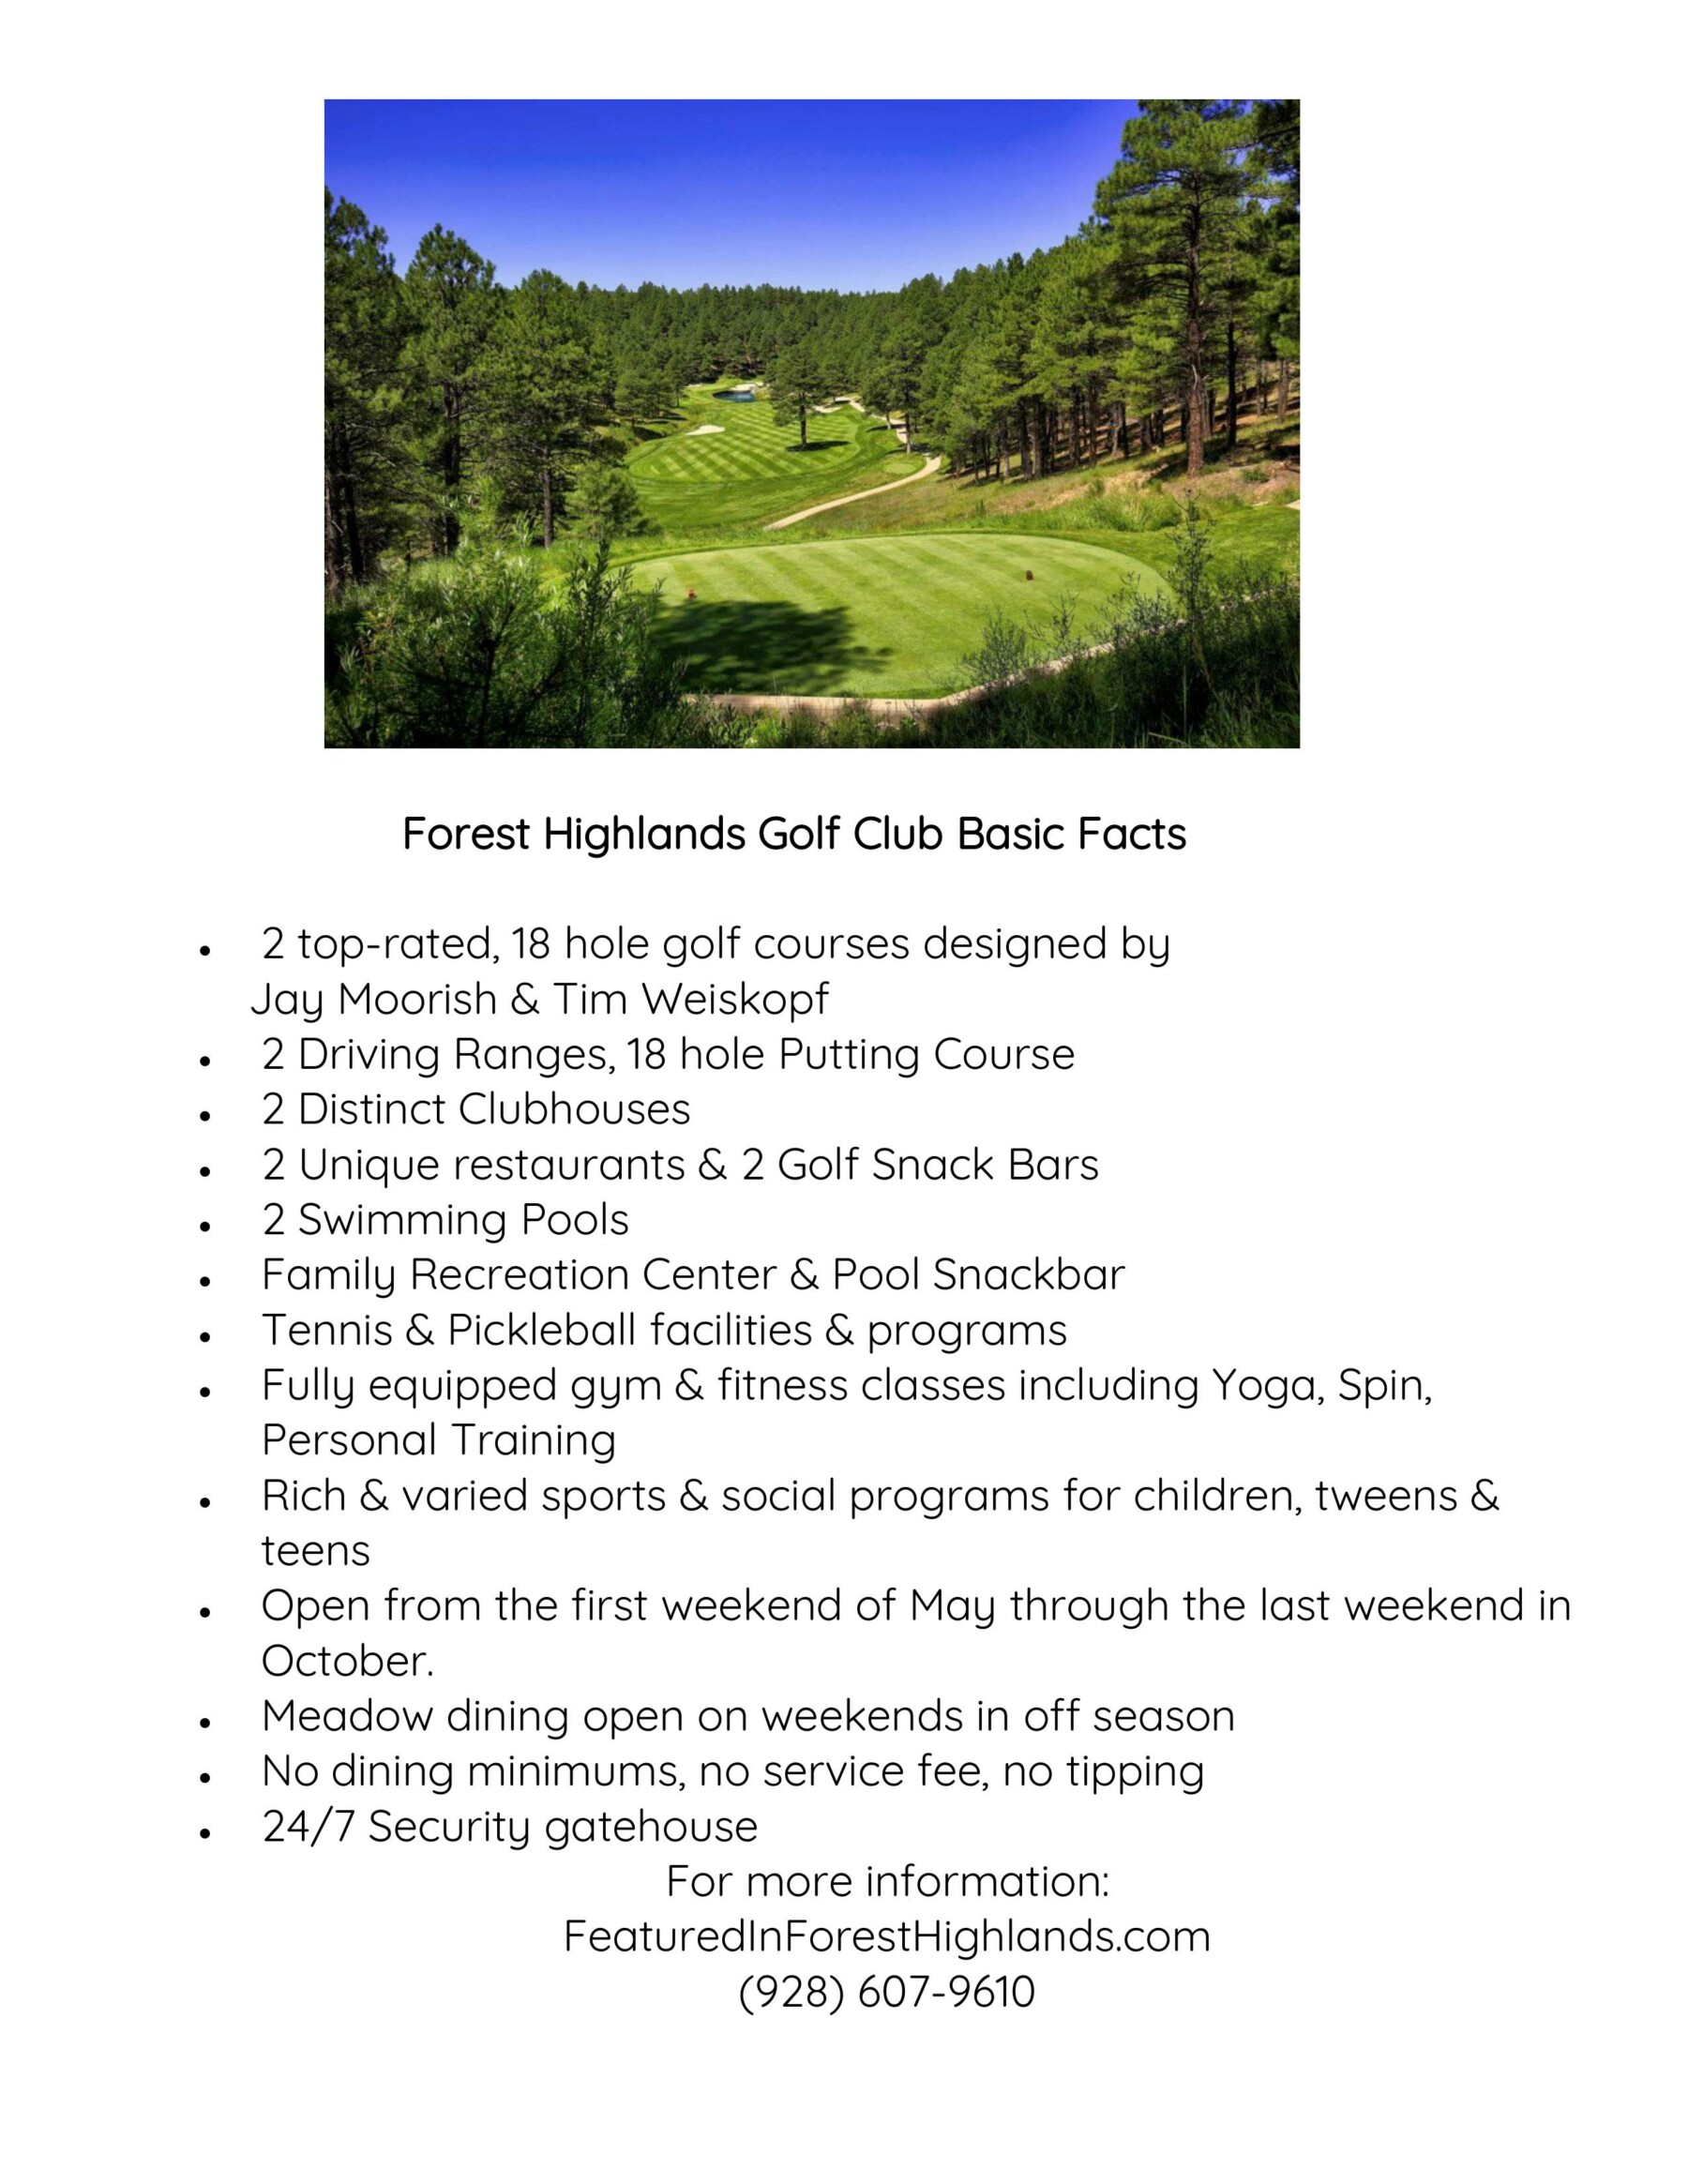 Forest Highlands Fact Sheet